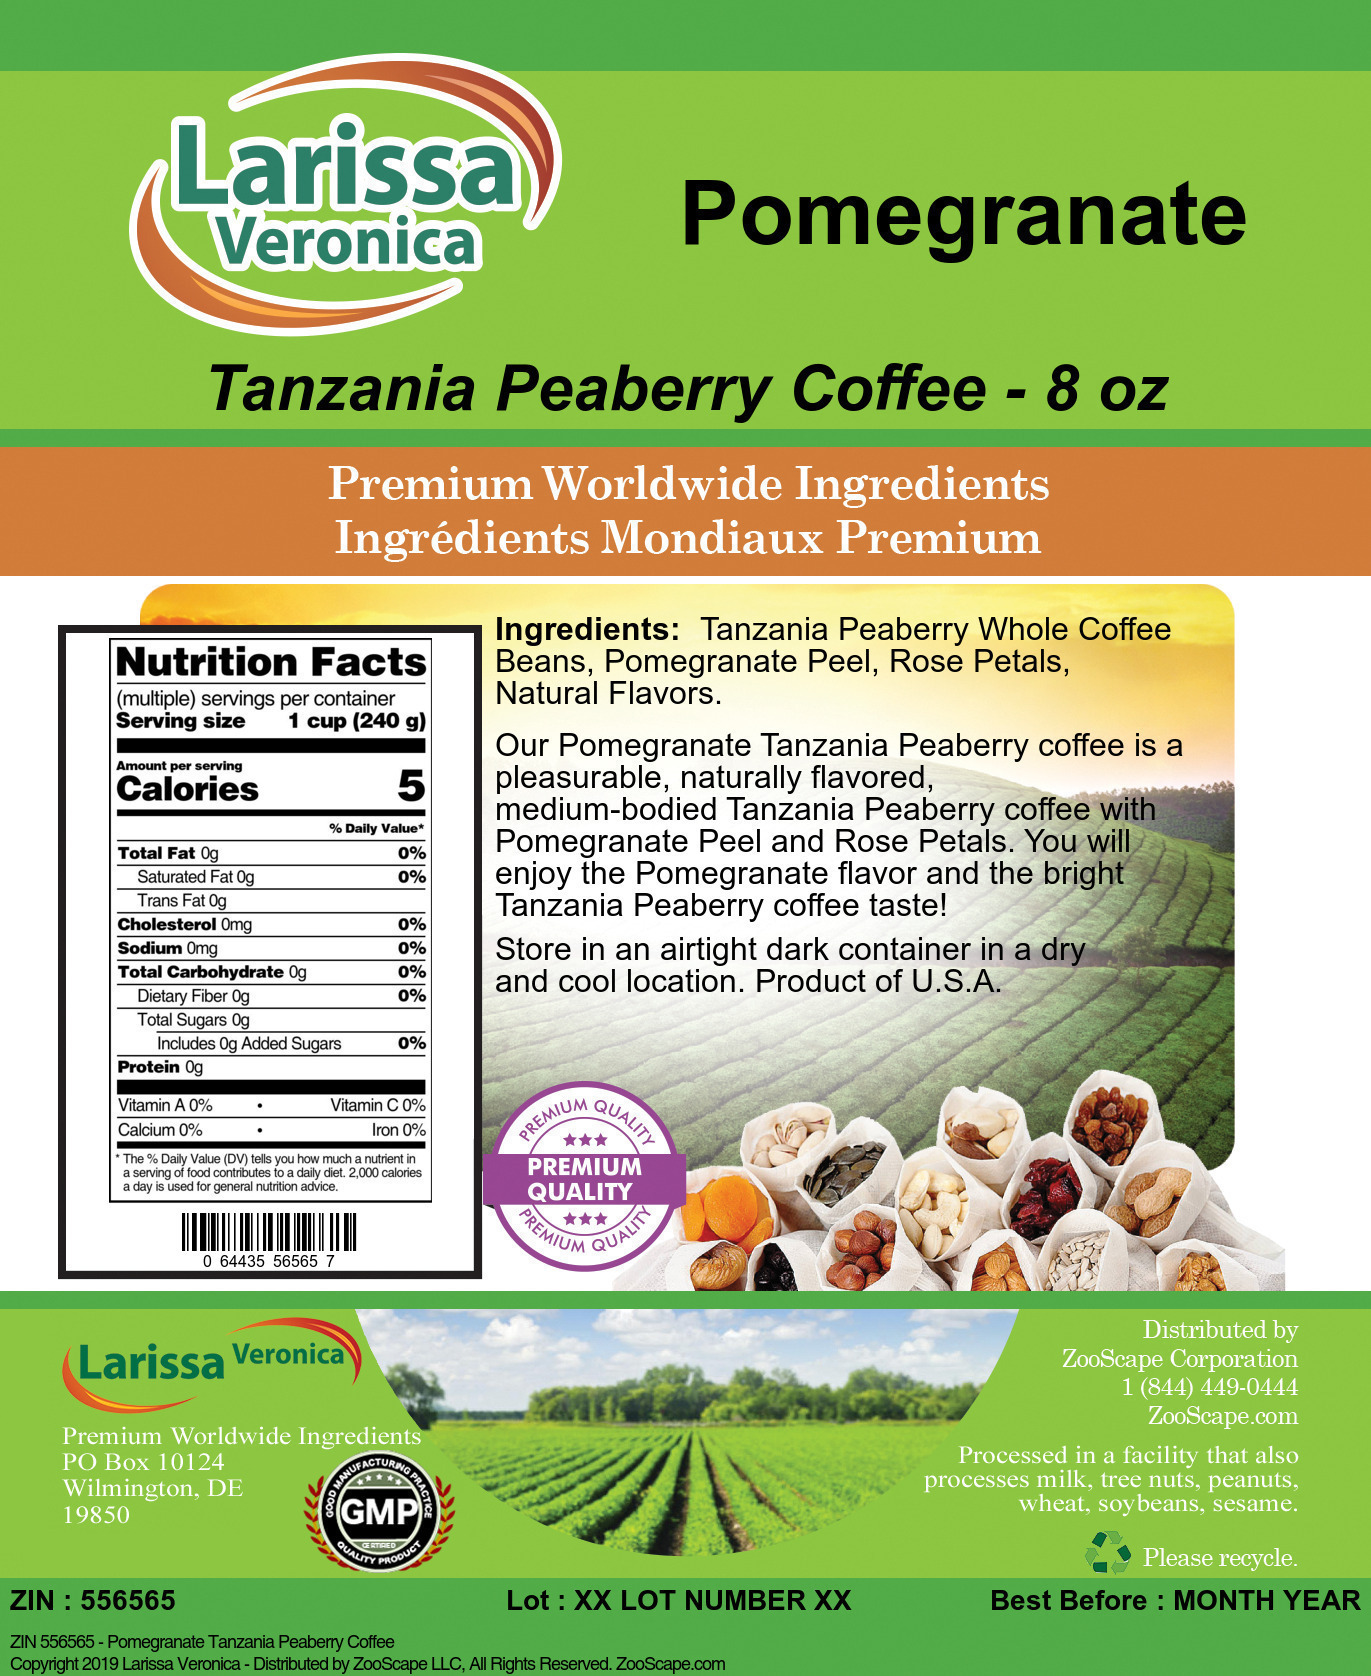 Pomegranate Tanzania Peaberry Coffee - Label